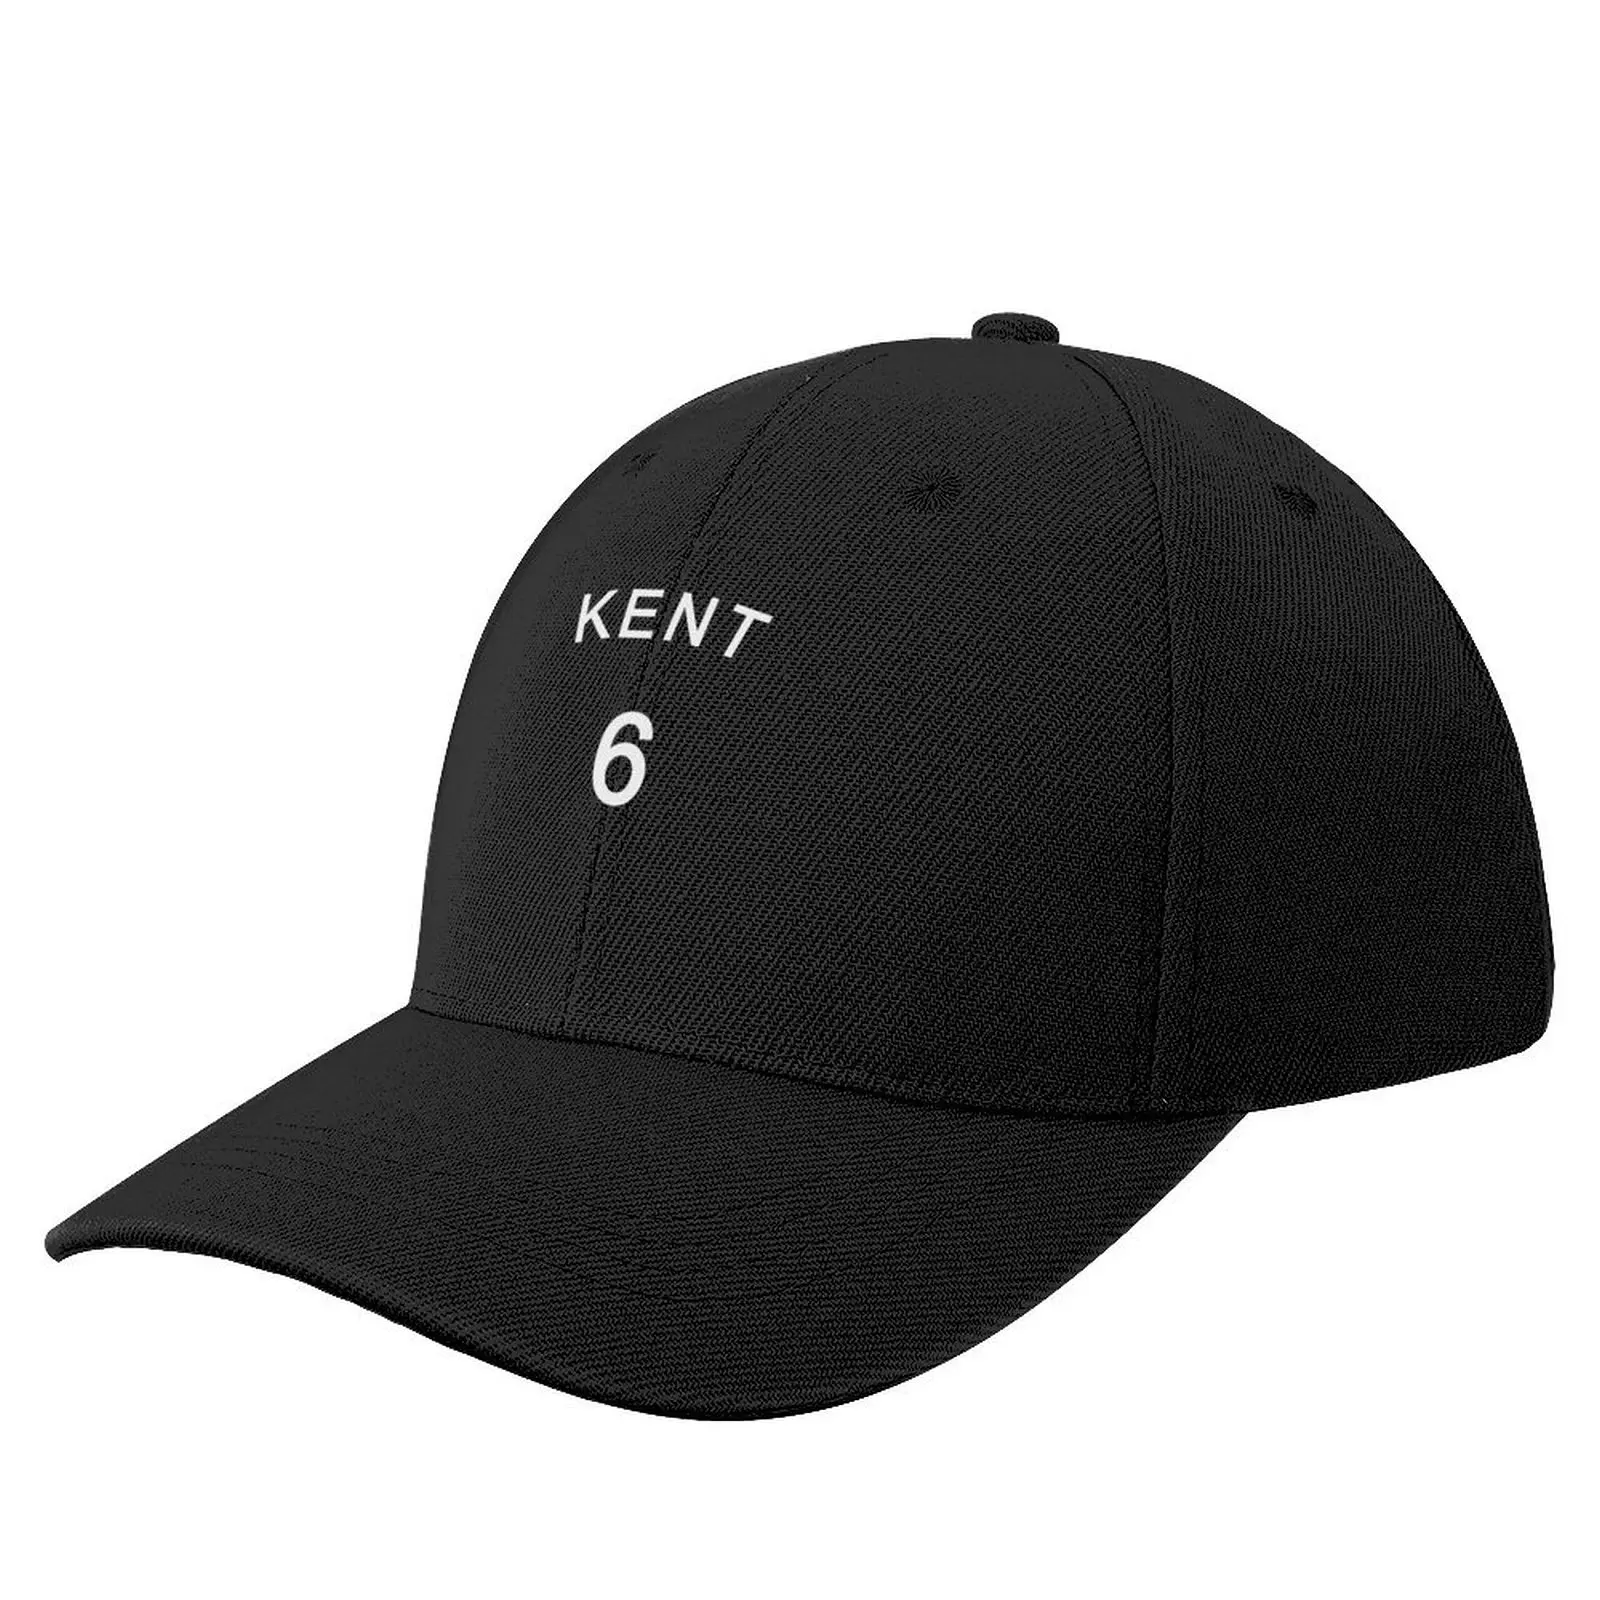 

ROY KENT JERSEY Baseball Cap Trucker Hat Icon Mountaineering Trucker Hats For Men Women's